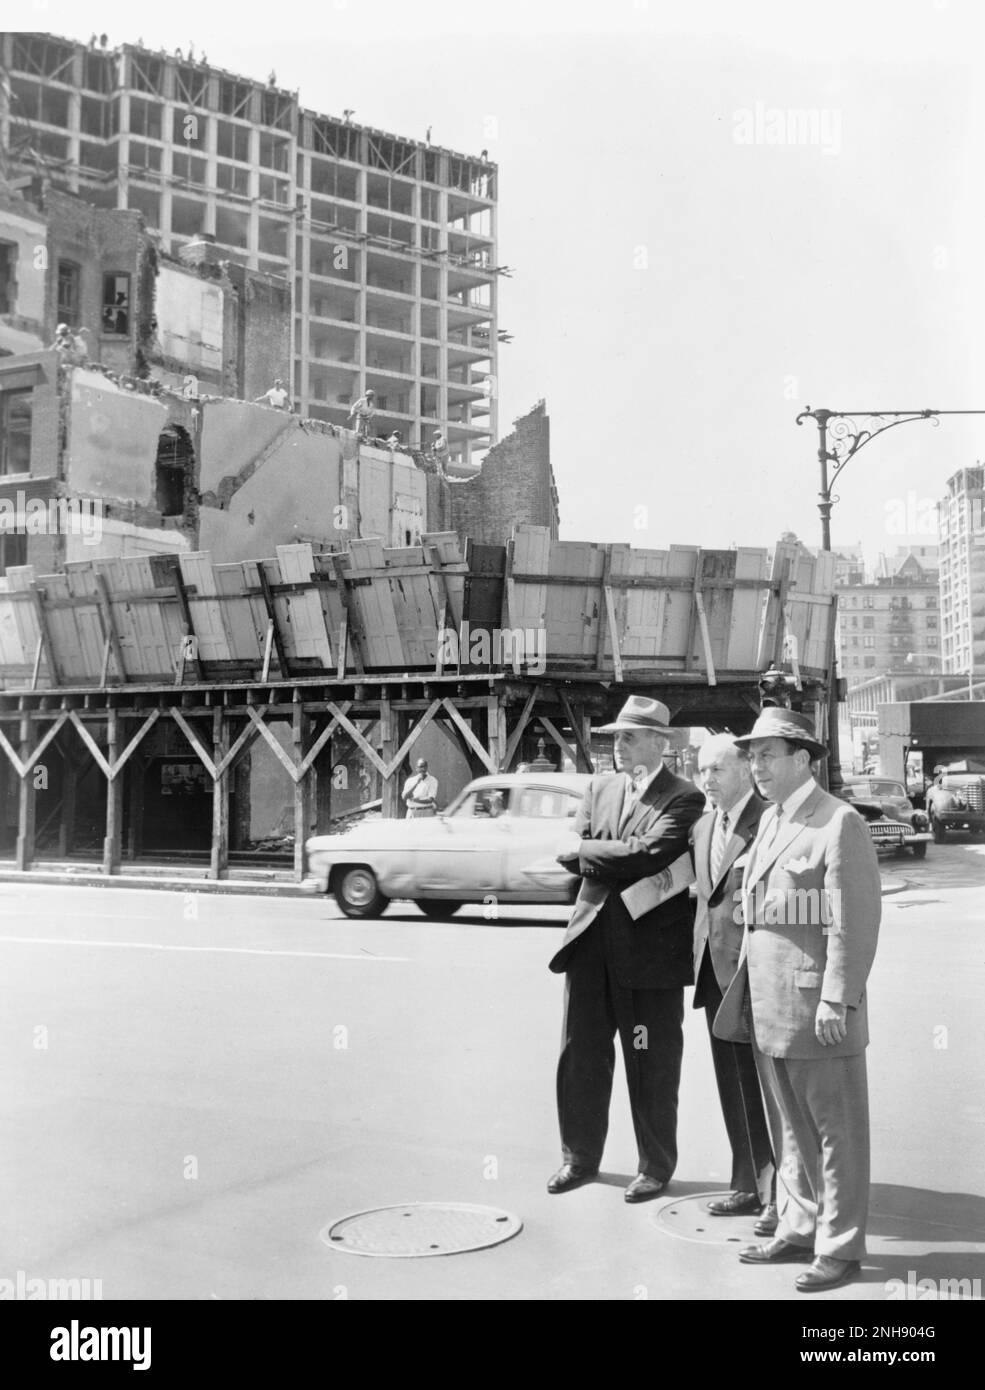 Bürgermeister von New York City Robert Wagner (r), zusammen mit Robert Moses (l) und Frank Meistrell (c) auf einer Bautour in New York City. Fotografiert von Walter Albertin, 9. August 1956. Stockfoto